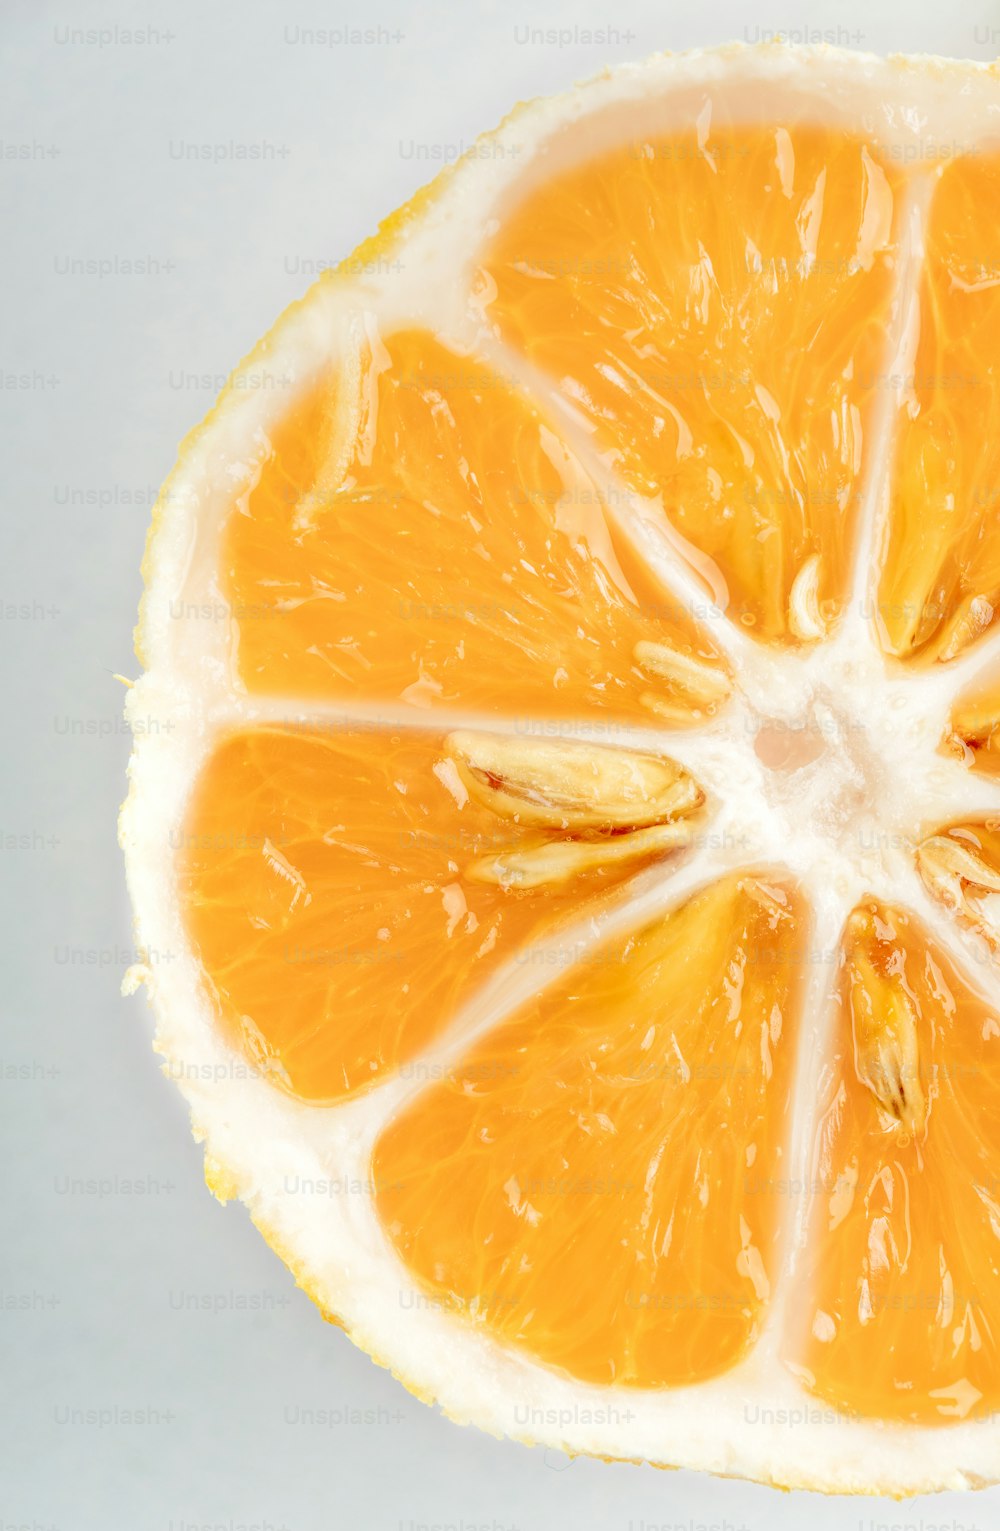 una naranja cortada por la mitad sobre una superficie blanca